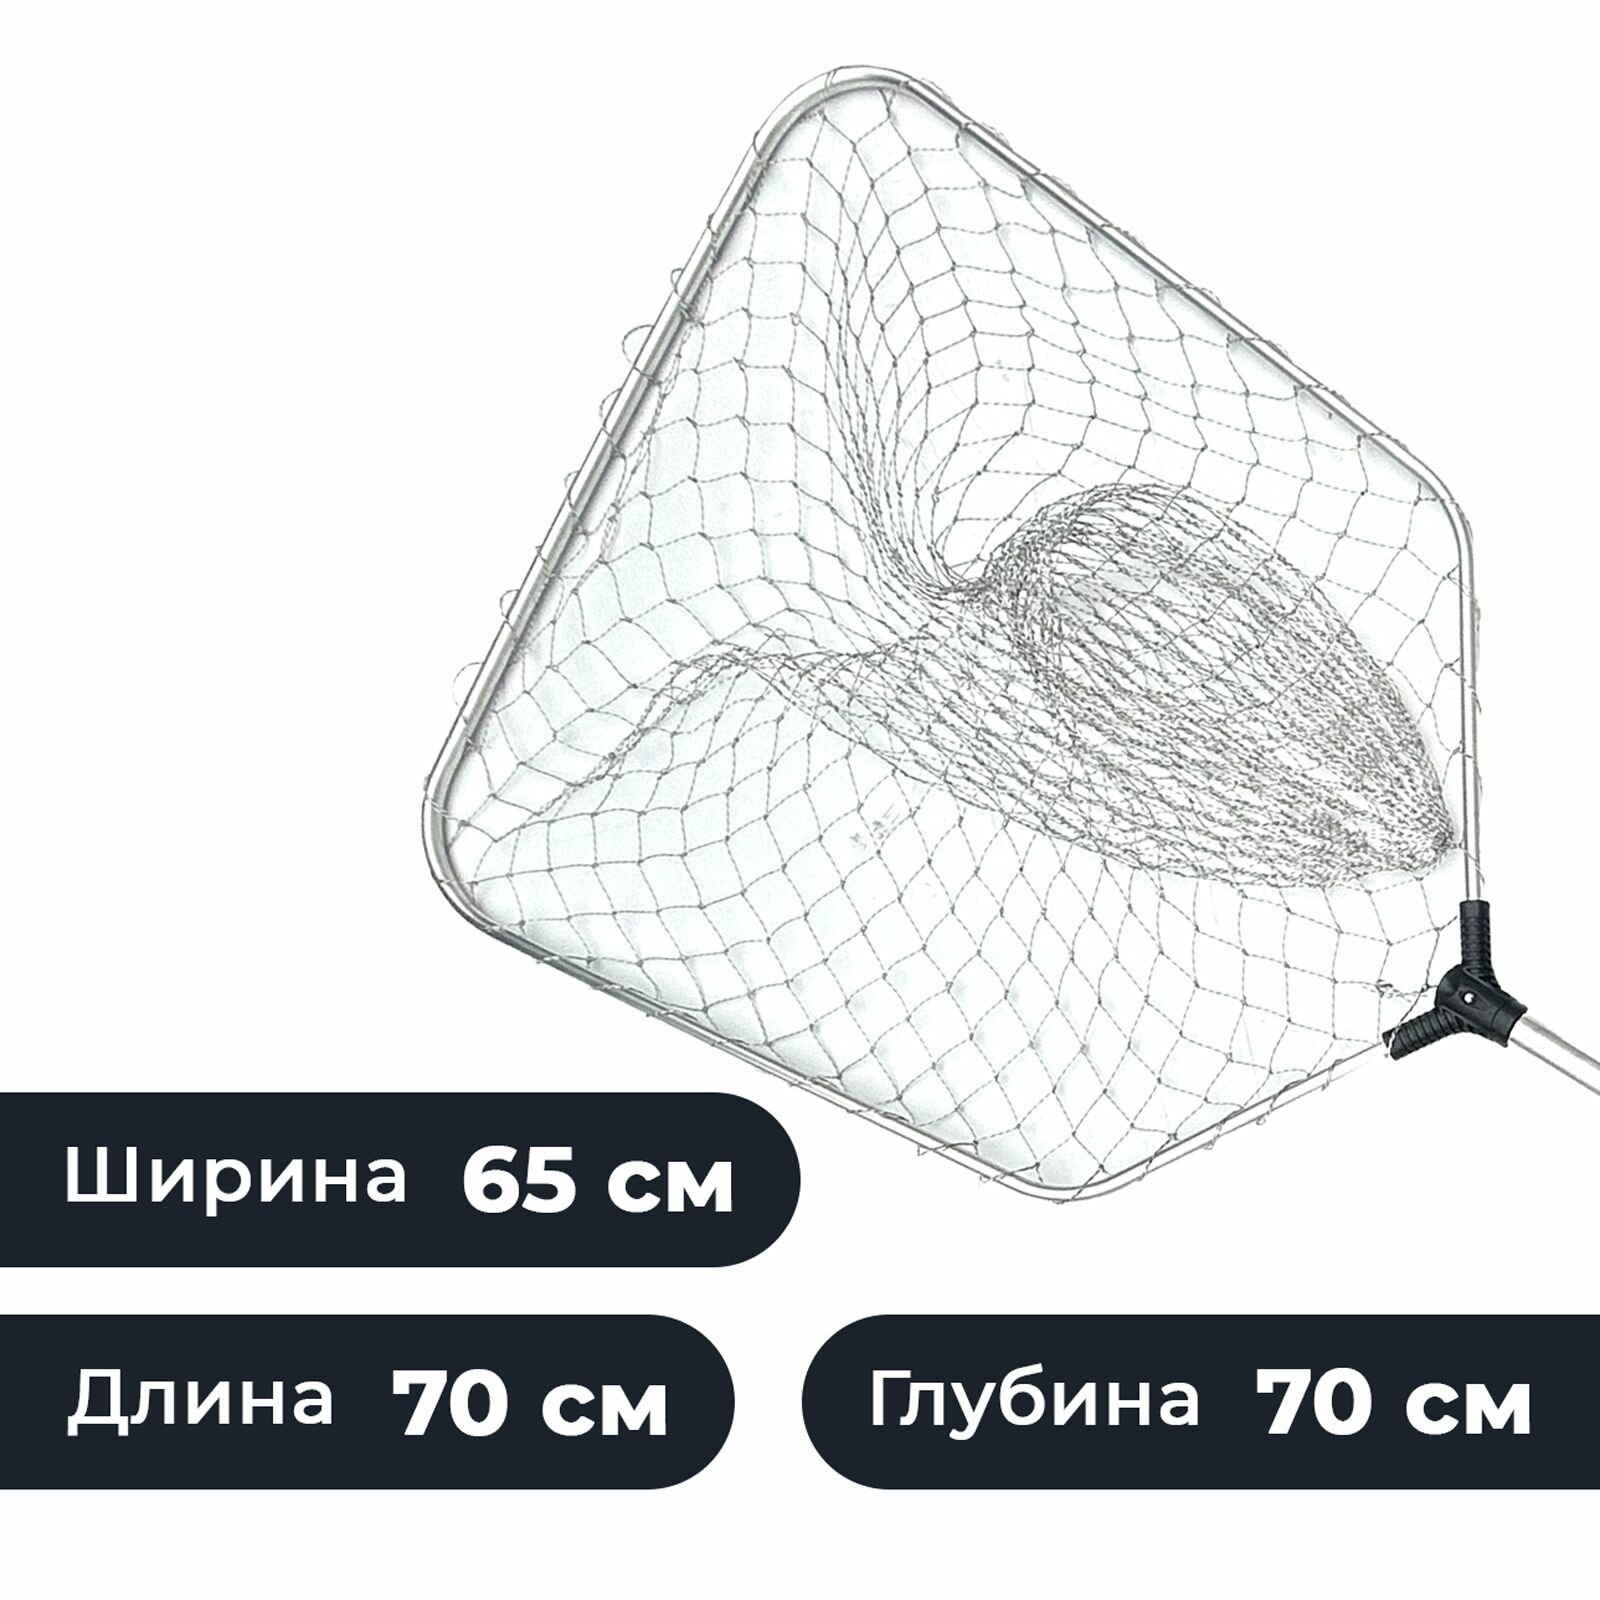 Подсачек рыболовный раздвижной / Подсак для рыбалки квадратный алюминиевый капрон